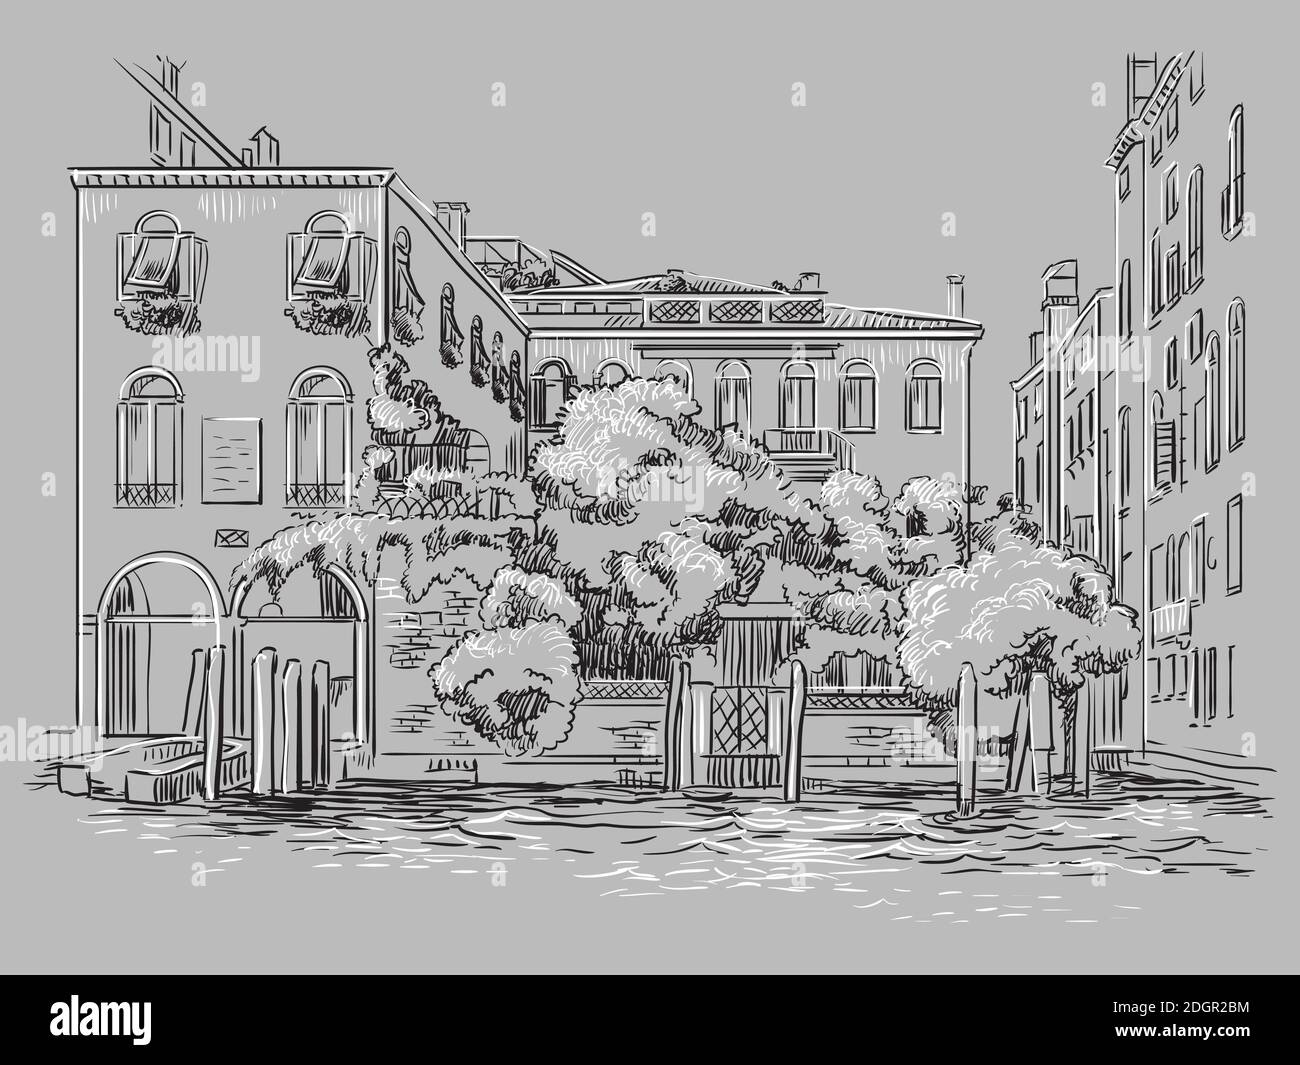 Illustration vectorielle à la main de Venise. Venise paysage urbain croquis dessiné à la main dans des couleurs monochromes isolées sur fond gris. Concept de voyage. Pour p Illustration de Vecteur